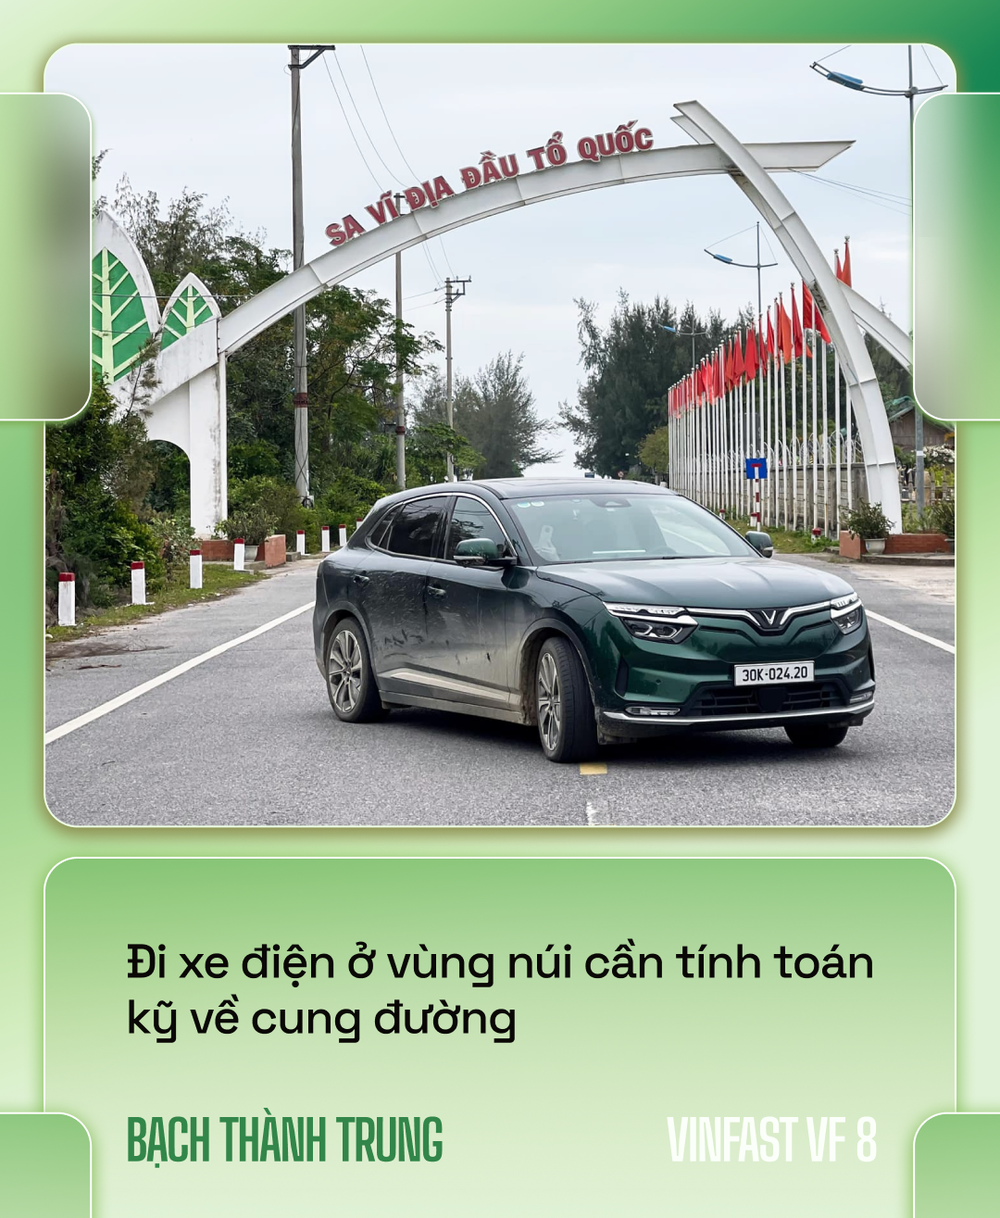 Nhà sáng lập VOZ lái VinFast VF 8 xuyên Việt hơn 6.600km: Đổ đèo nhàn hơn xe xăng, nhưng vẫn cần hoàn thiện hơn - Ảnh 3.